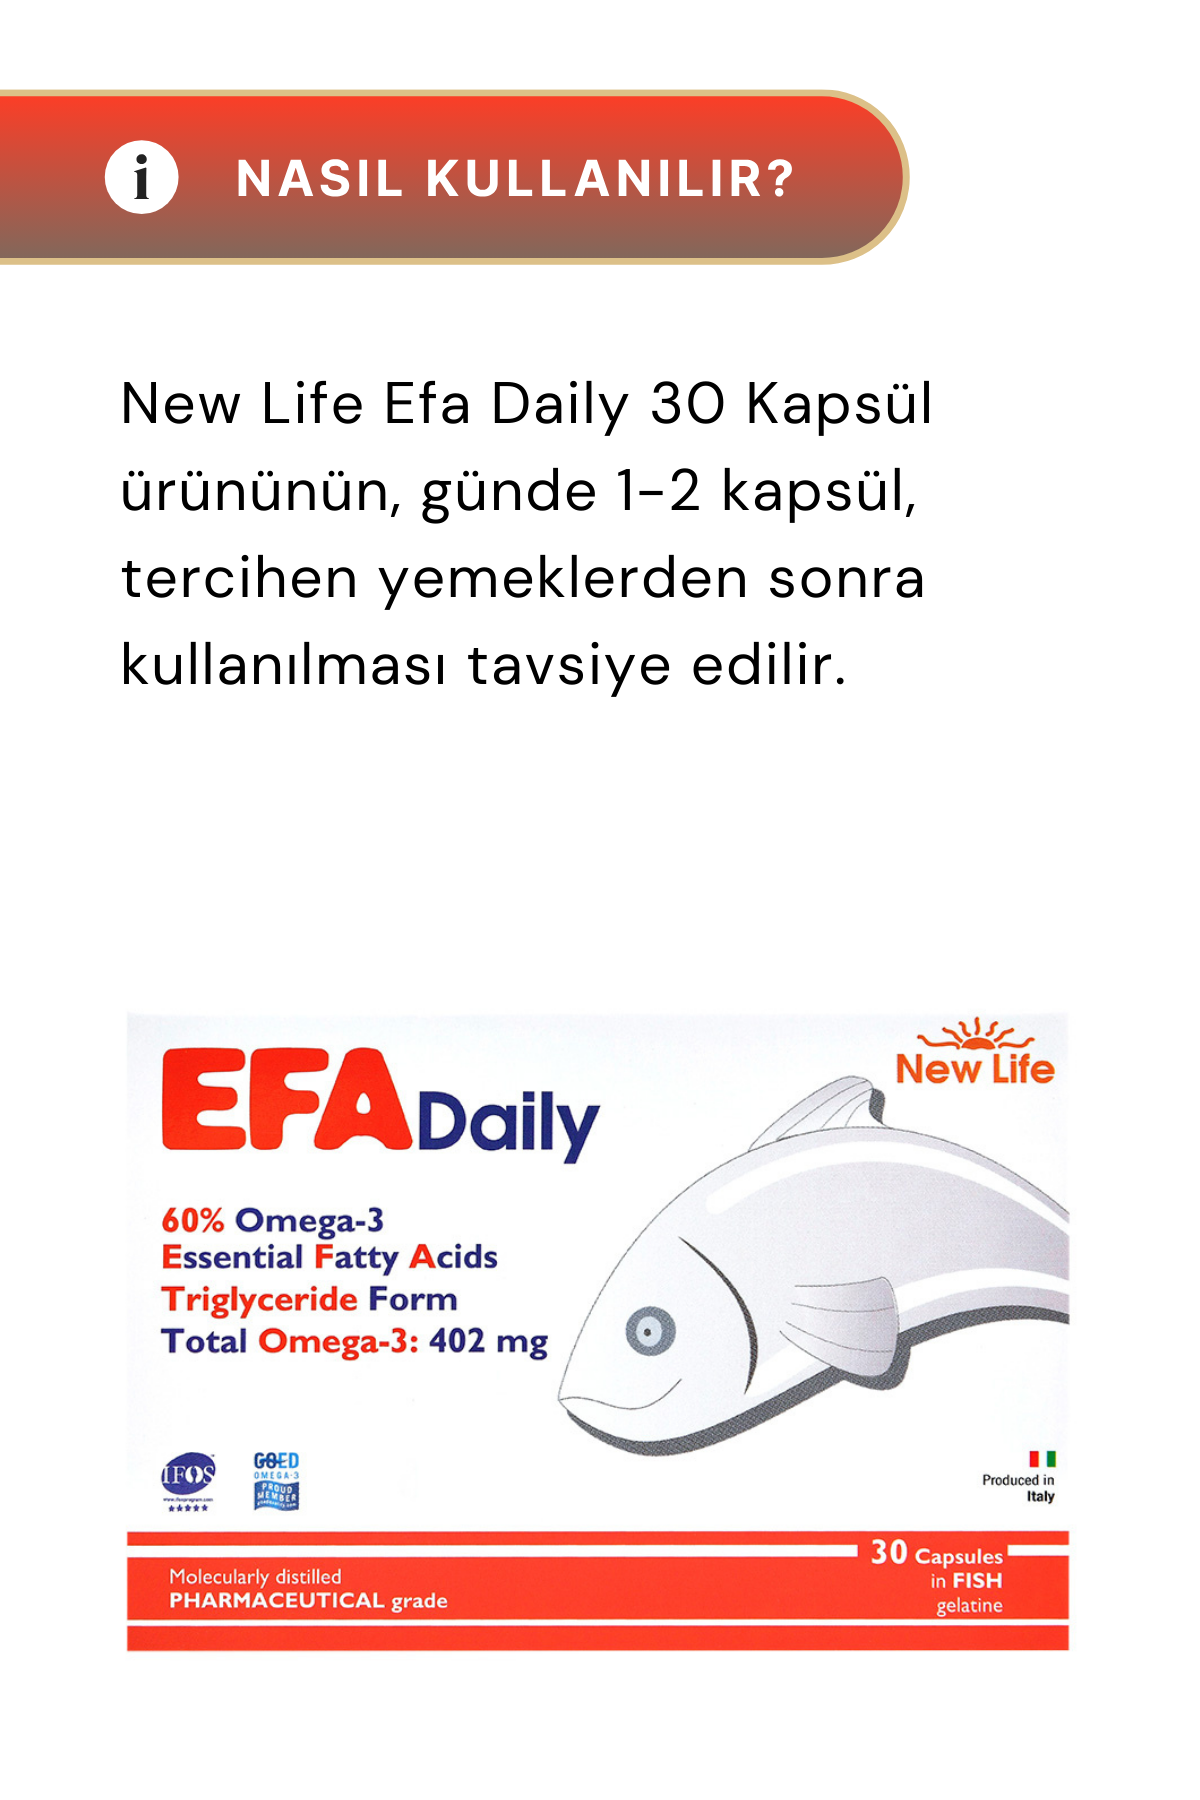 New Life EFA Daily Balık Yağı 30 Kapsül 2'li Paket